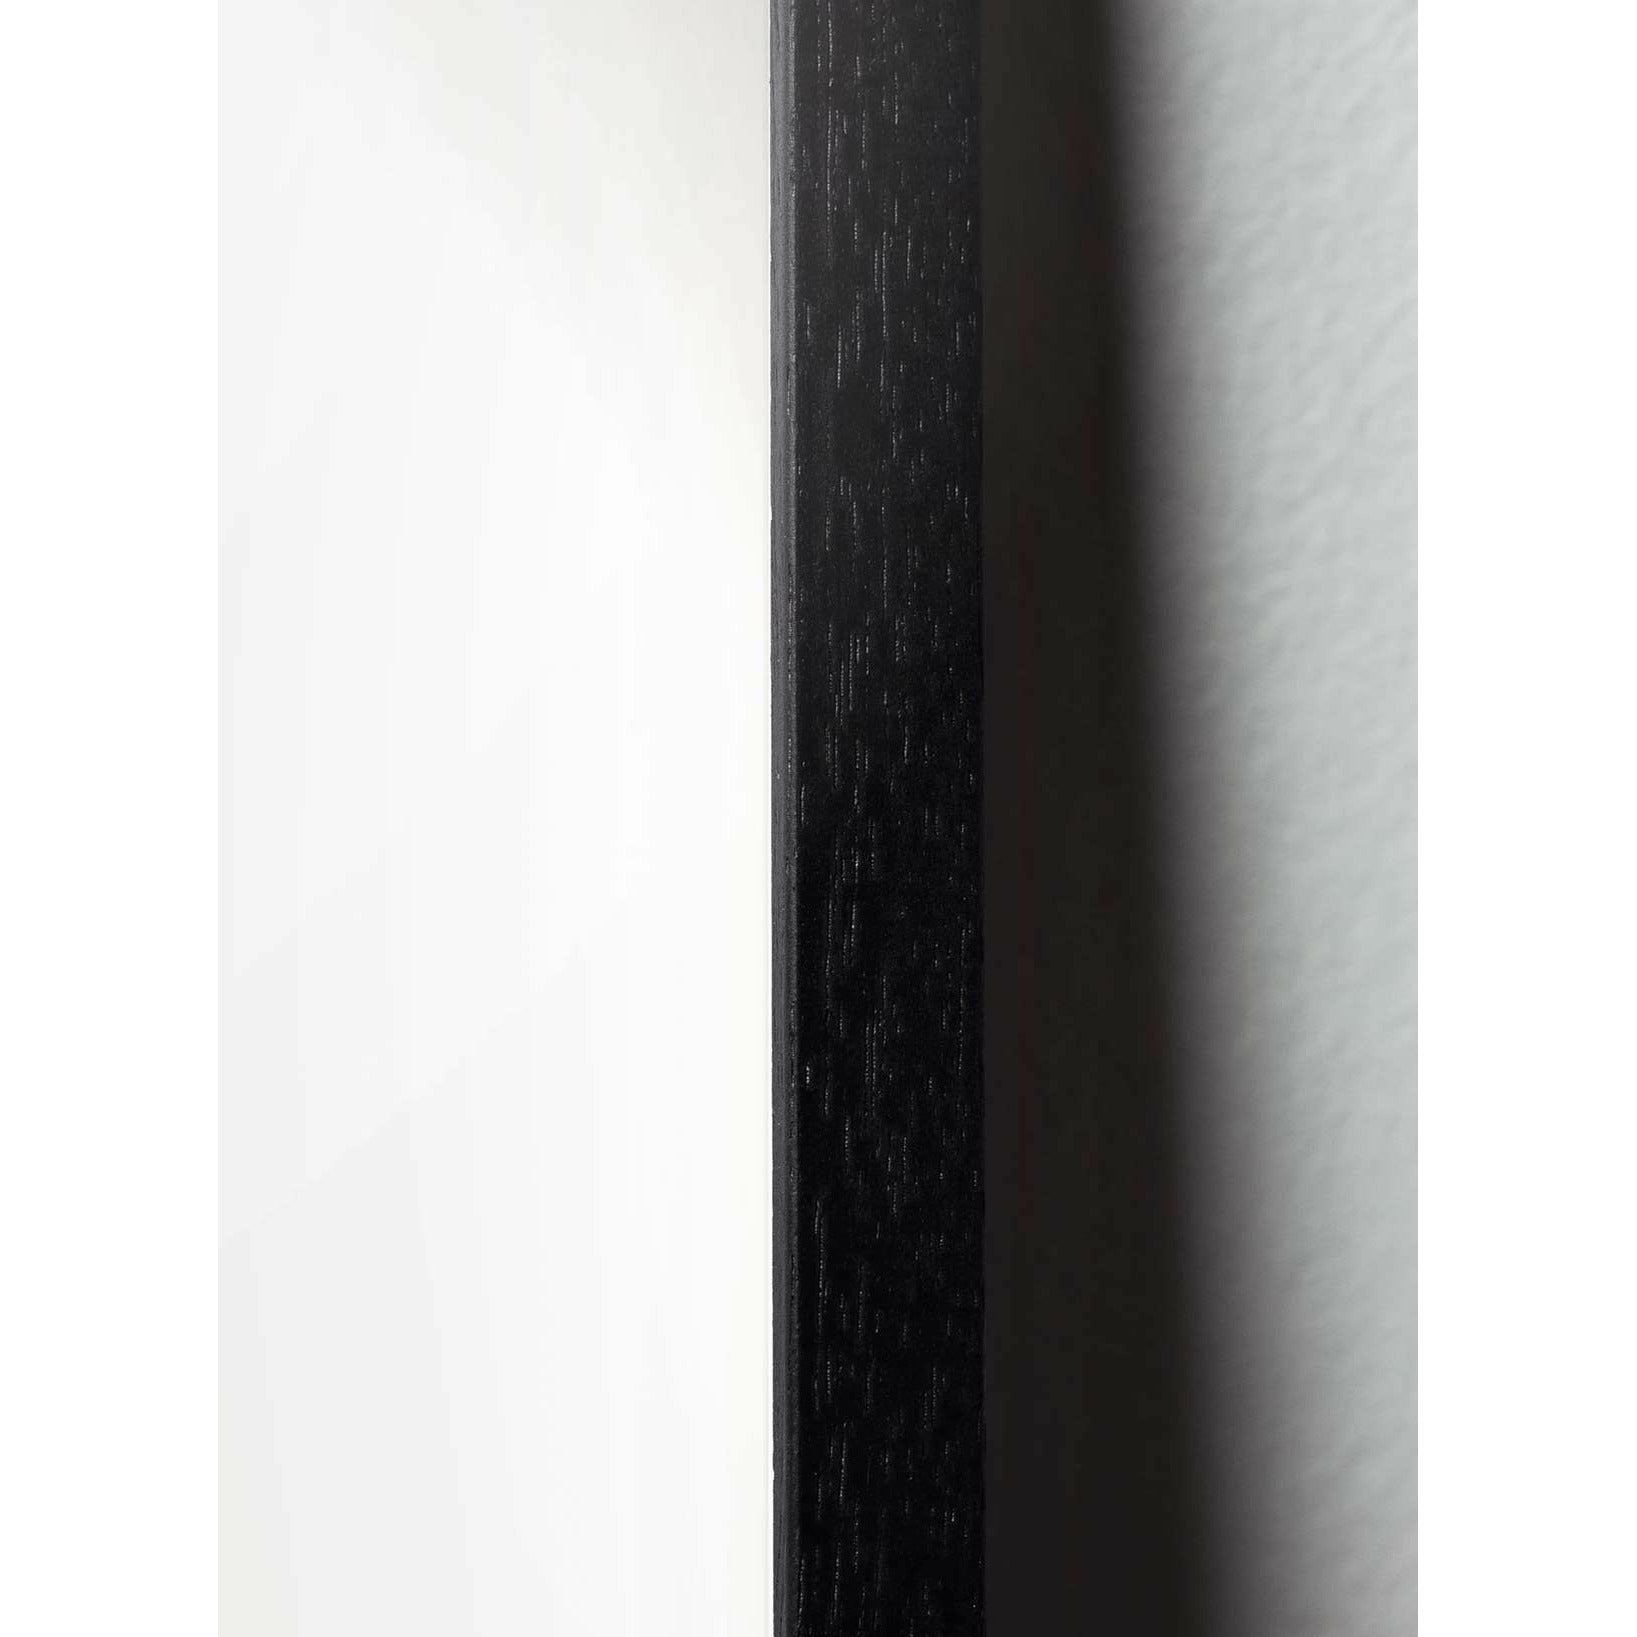 Pomysły plakat linii łańcuchowej, rama w czarnym lakierowanym drewnie 50x70 cm, białe tło